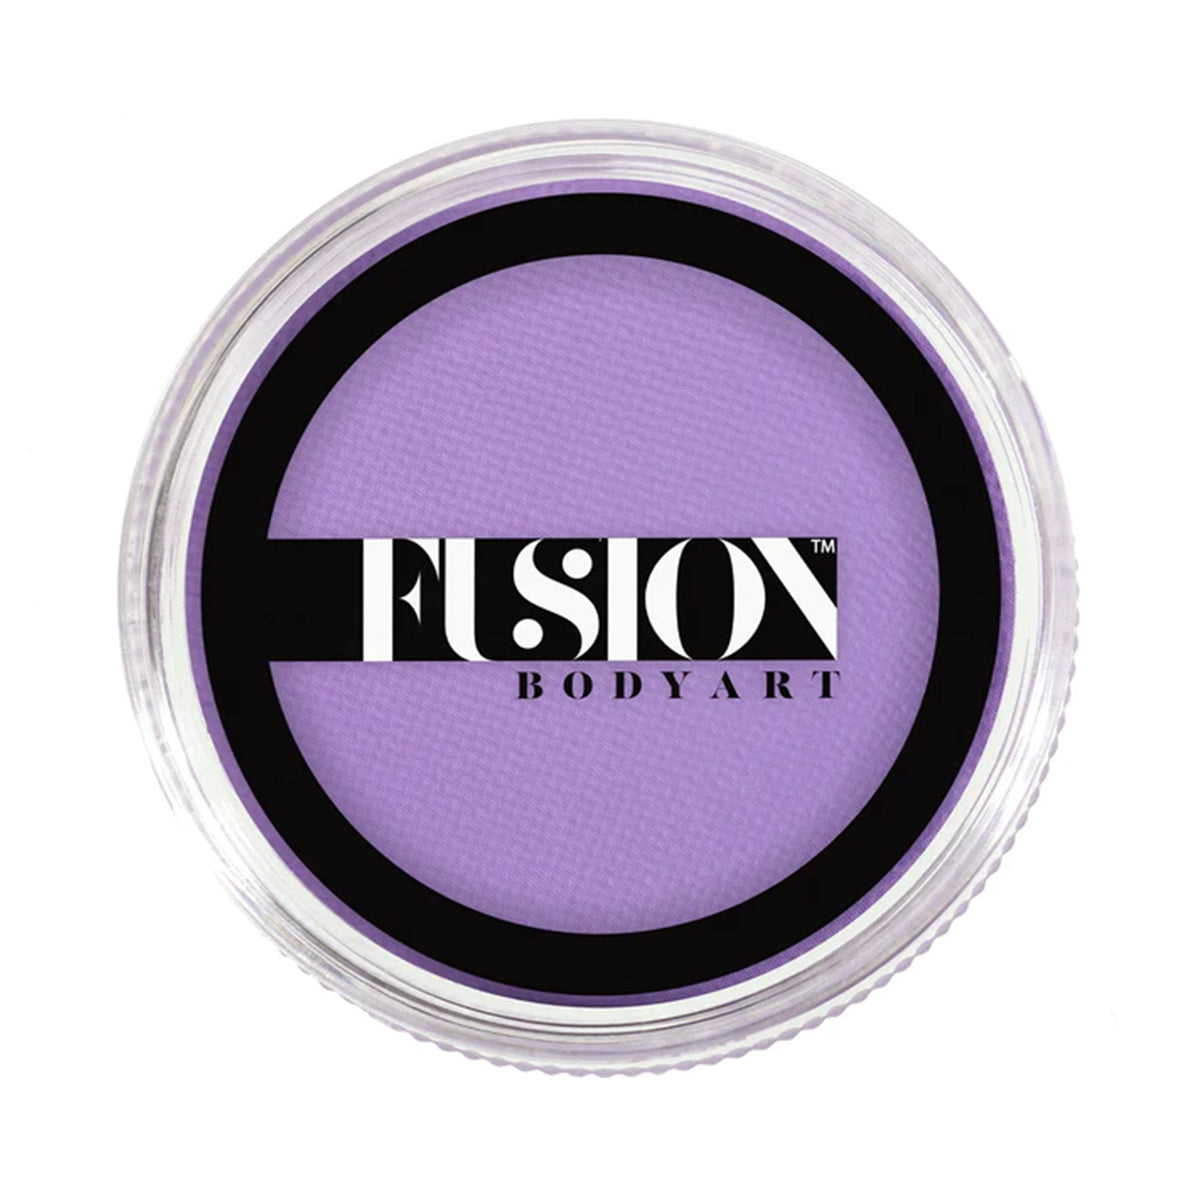 Fusion Body Art Face Paint - Prime Pastel Purple (32 gm)